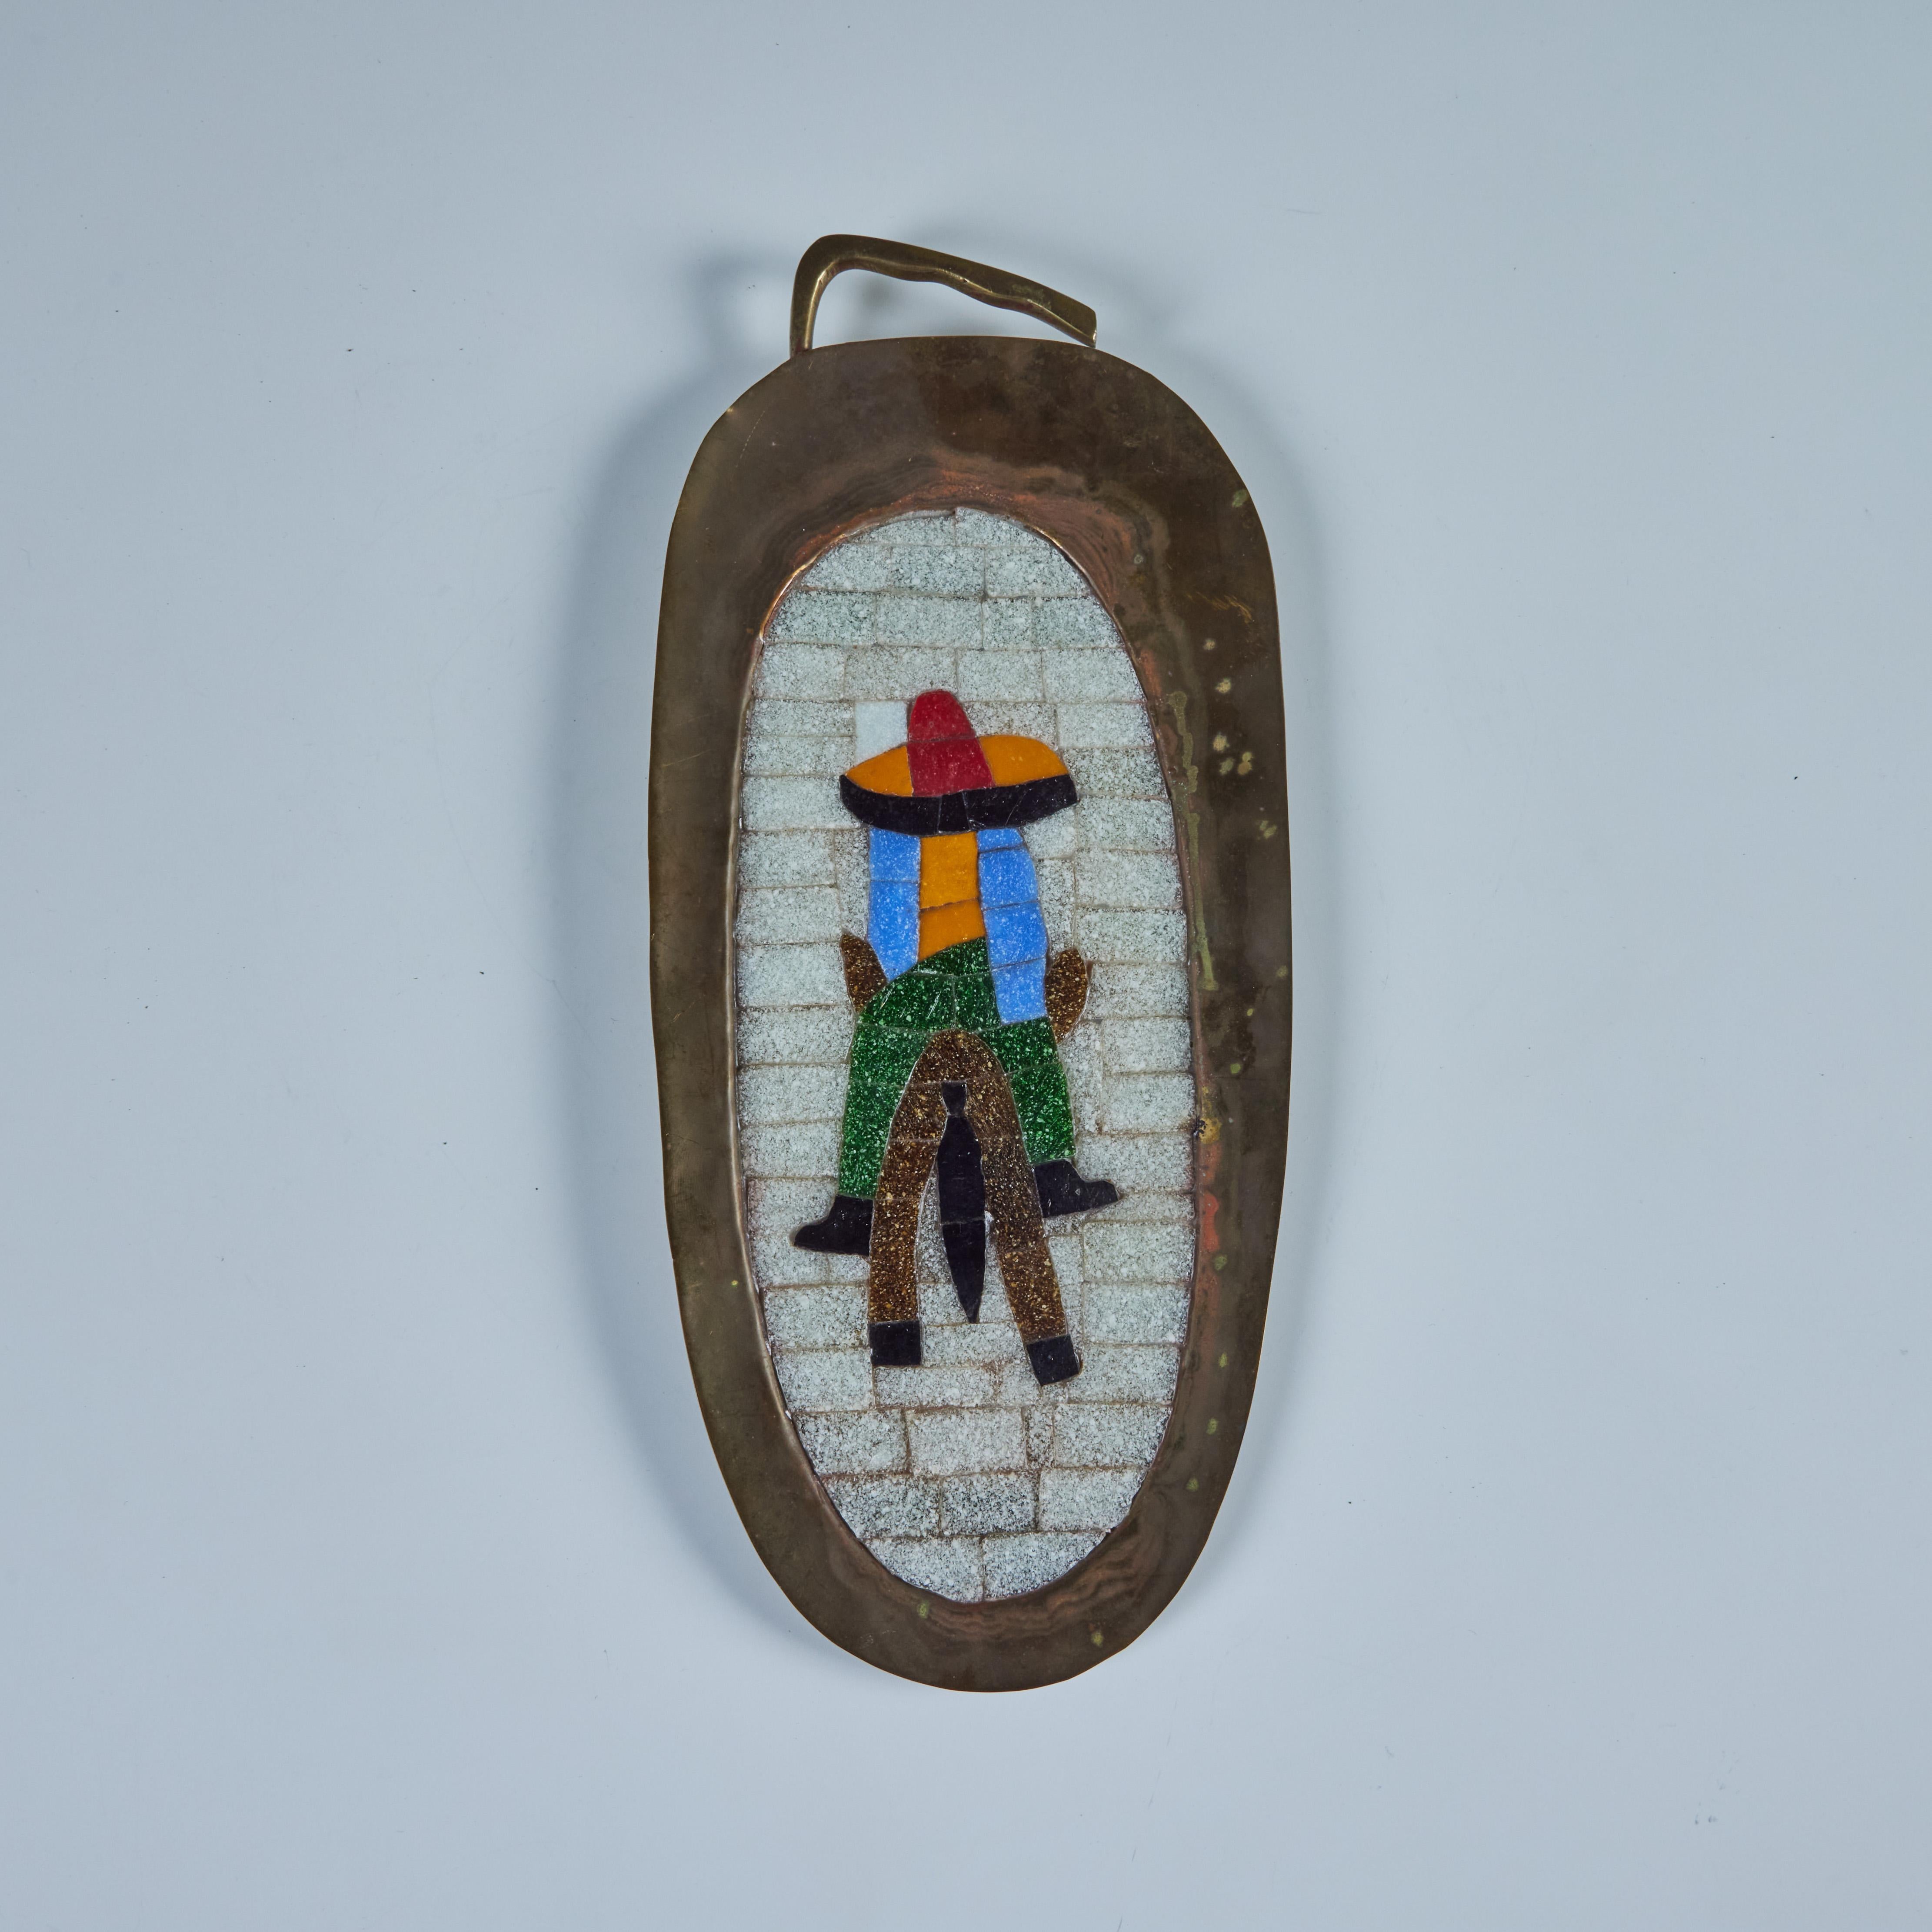 Ovaler, handgeschmiedeter Messing-Wandbehang im Stil von Salvador Teran, ca. 1950er Jahre, Mexiko. Das Tablett zeigt die Mosaikeinlage eines Mannes, der auf einem Esel reitet und einen Sombrero trägt.

Abmessungen
15